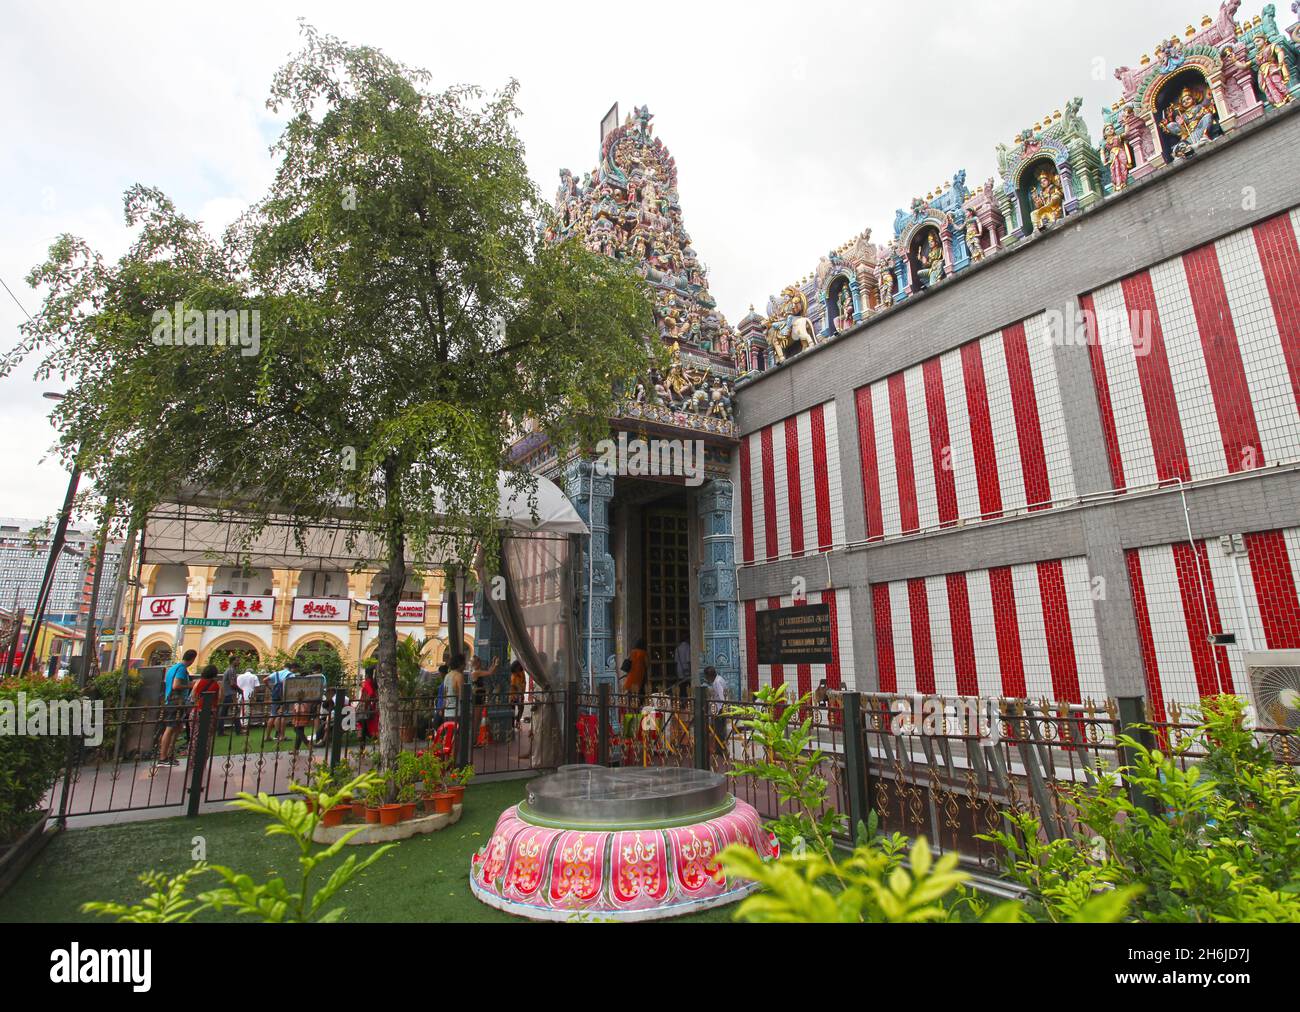 The Sri Veeramakaliamman Temple on Serangoon Road in Little India, Singapore. Stock Photo